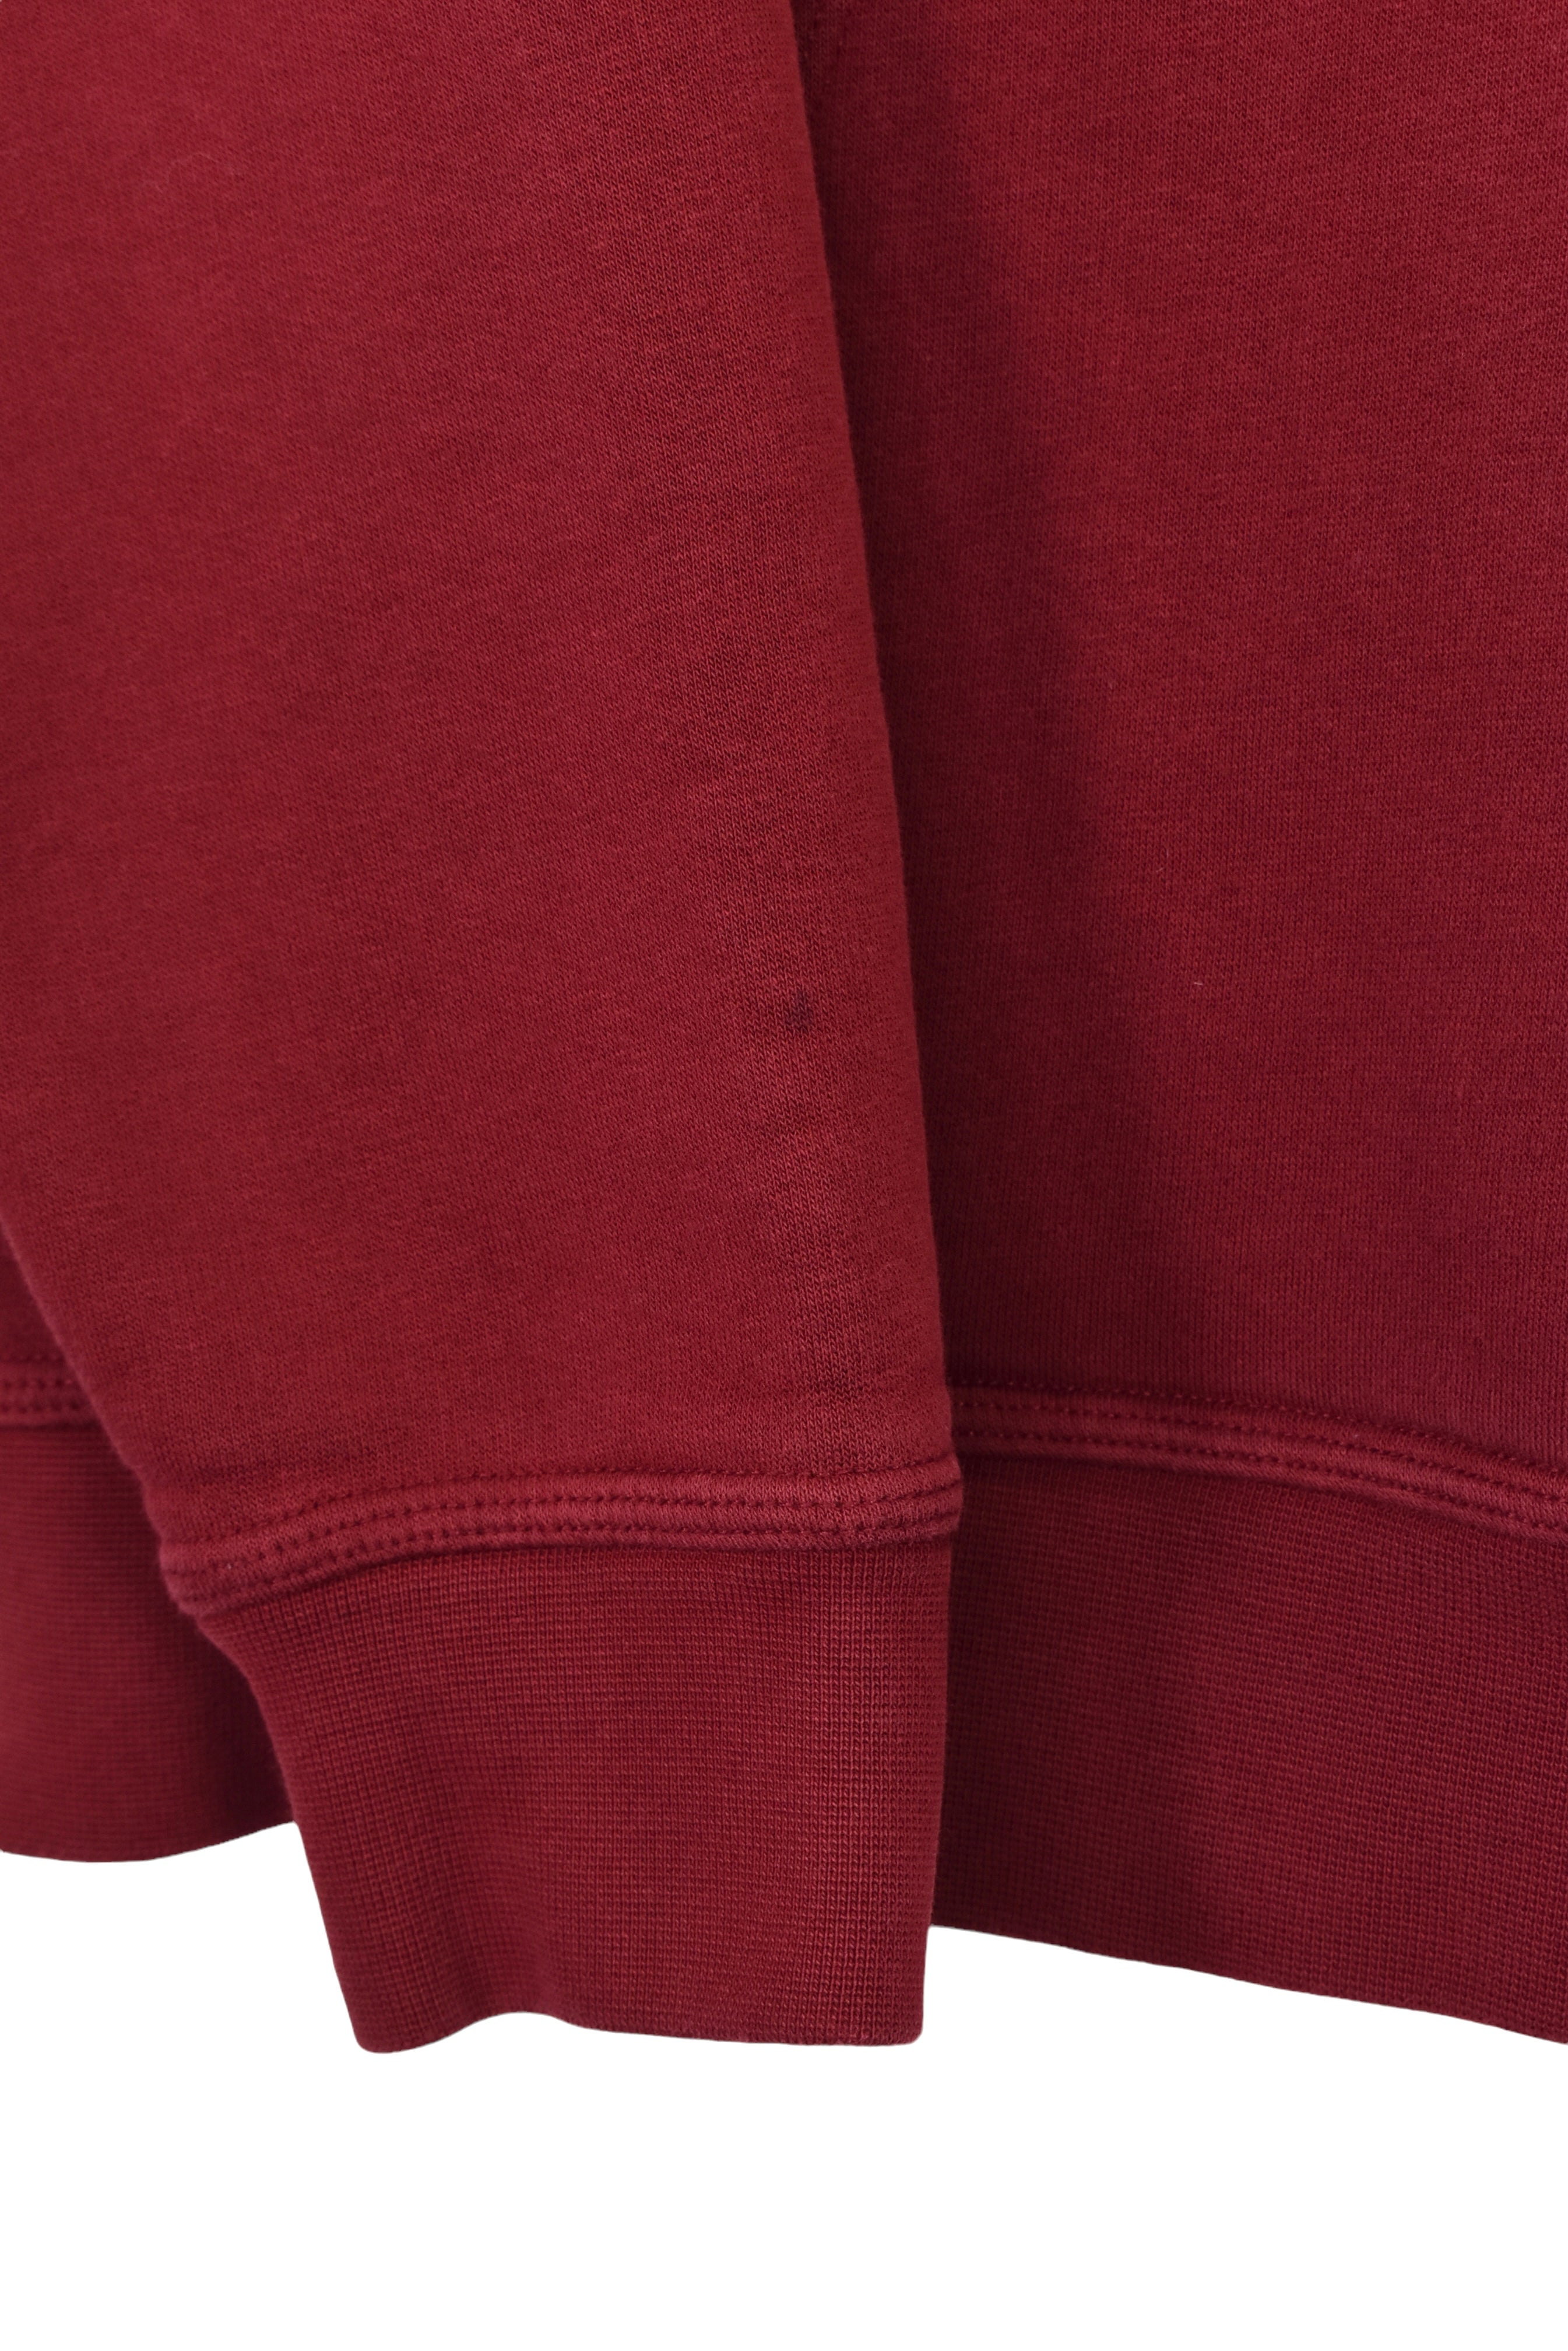 Vintage Nike hoodie (L), burgundy embroidered sweatshirt